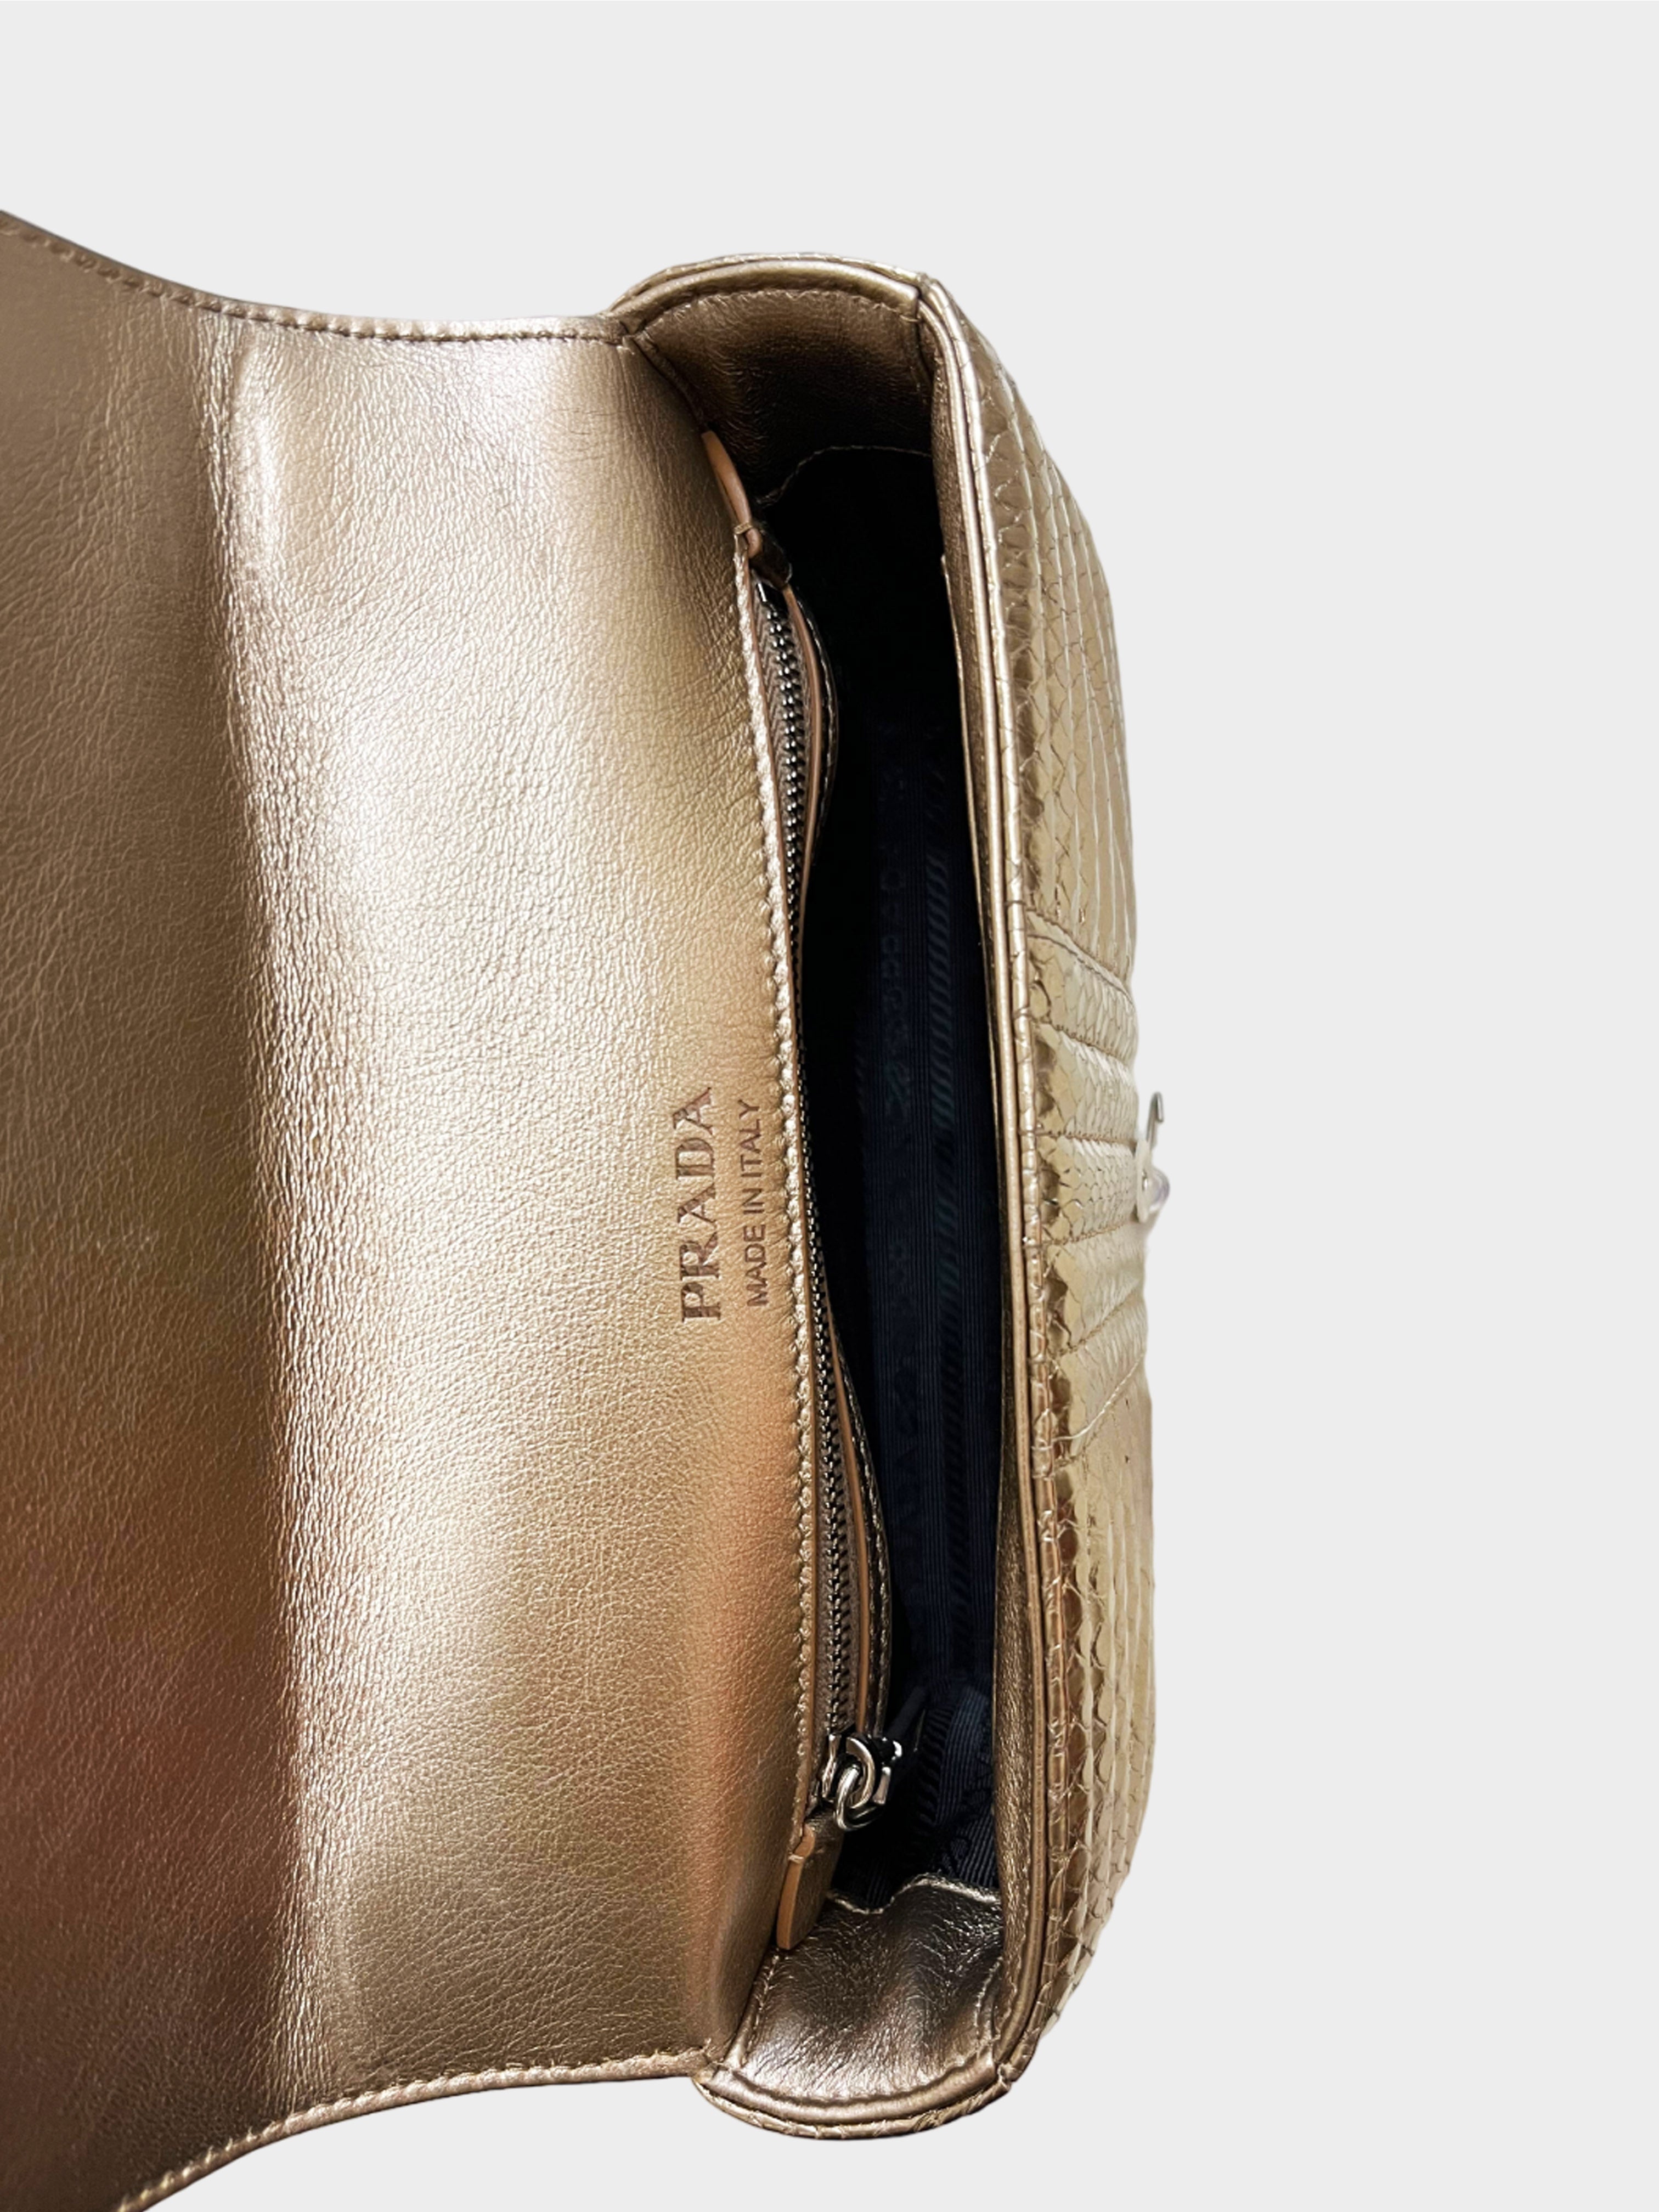 Prada 2010s Gold Python Leather Diagramme Shoulder Bag